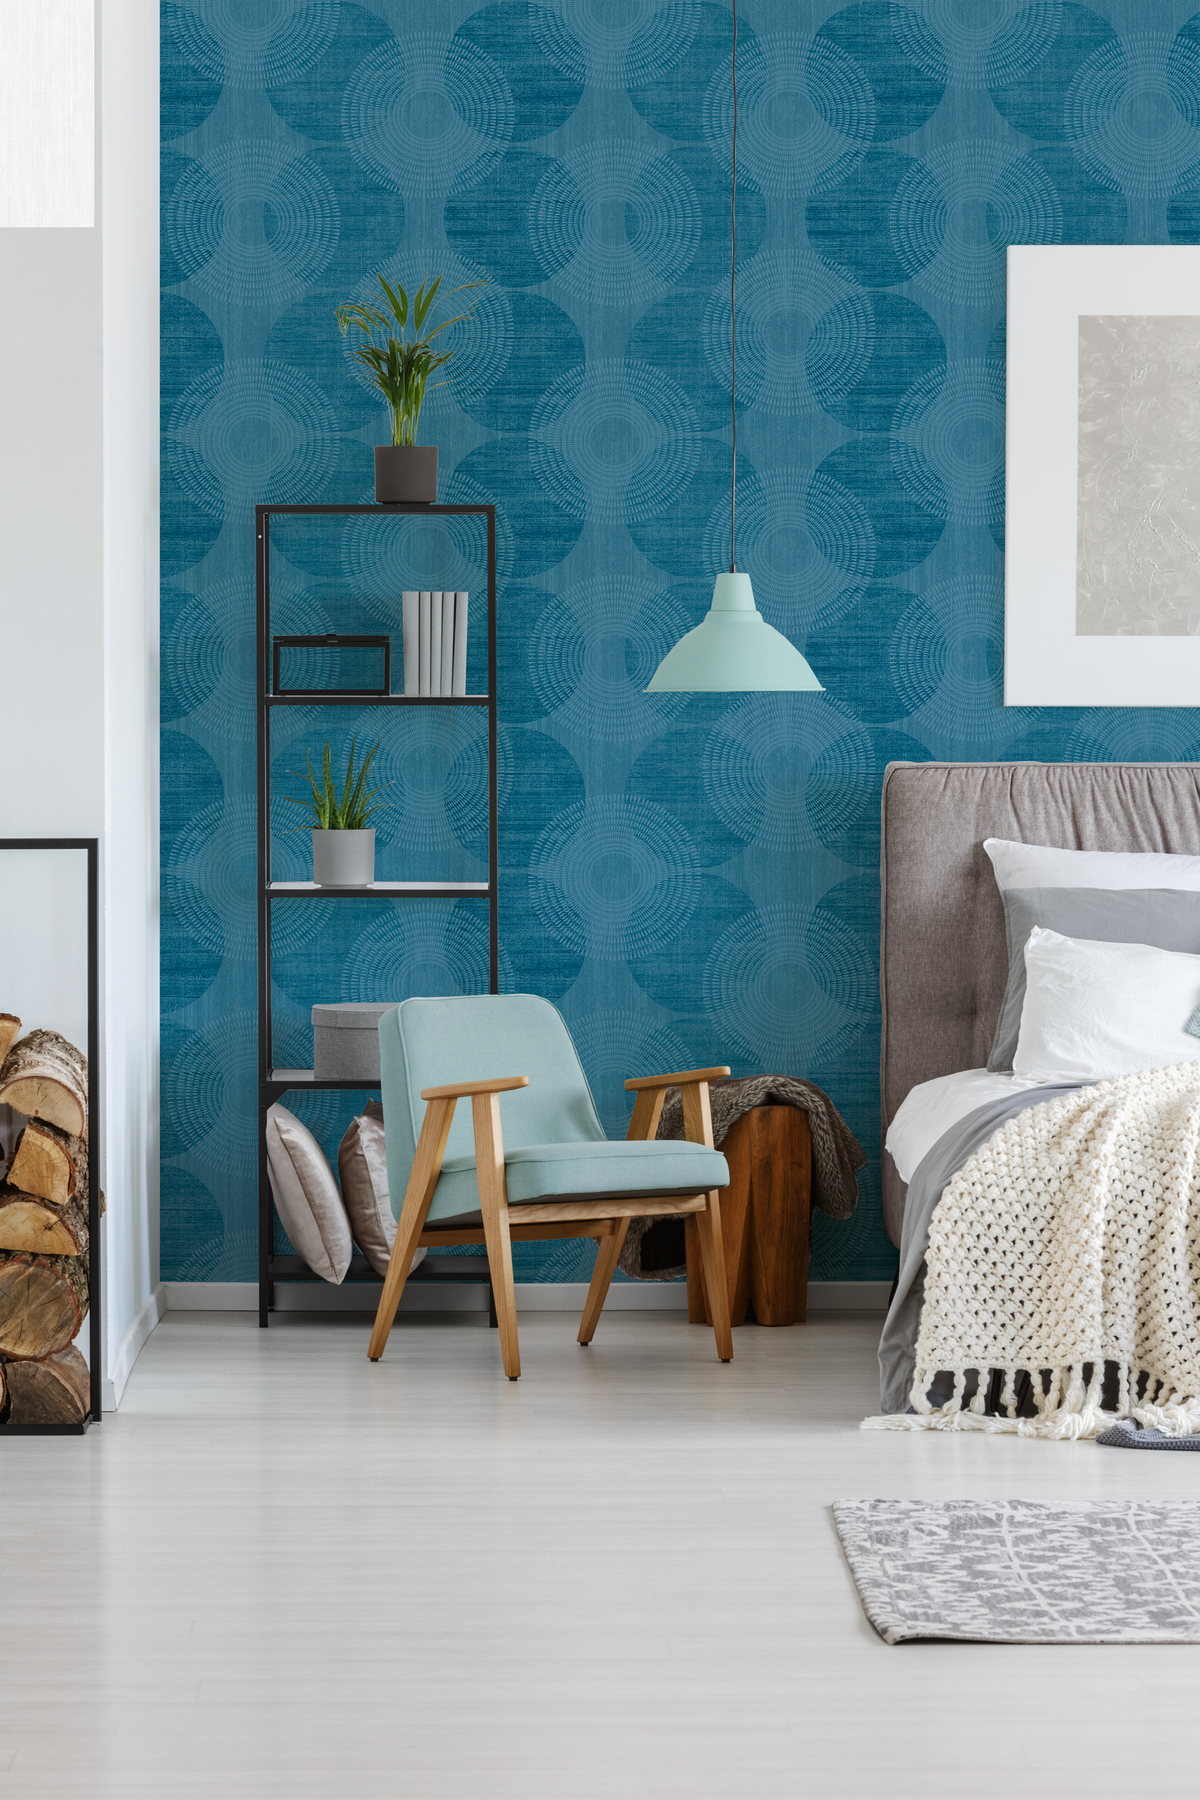             Effect wallpaper geometric Scandinavian design - blue
        